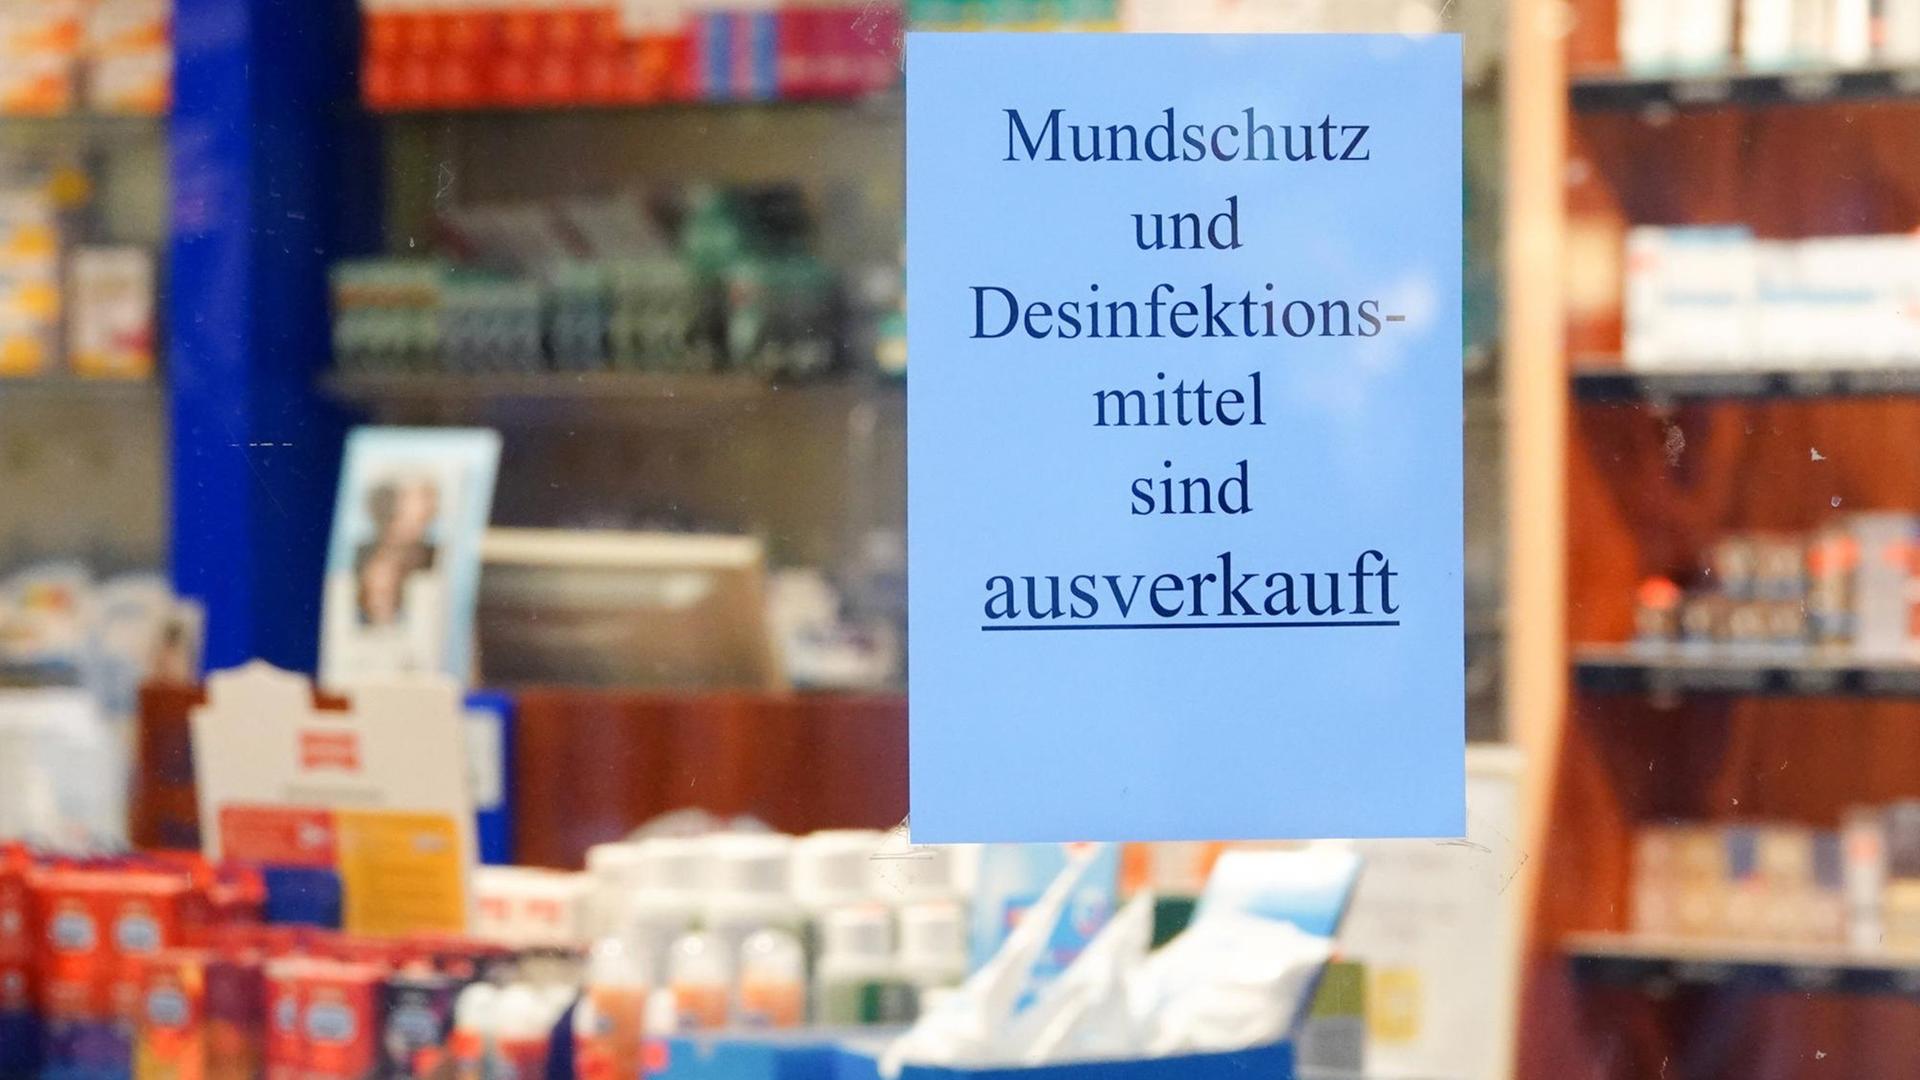 Ein Schild mit der Aufschrift Mundschutz und Desinfektionsmittel sind ausverkauft hängt im Fenster einer Apotheke.